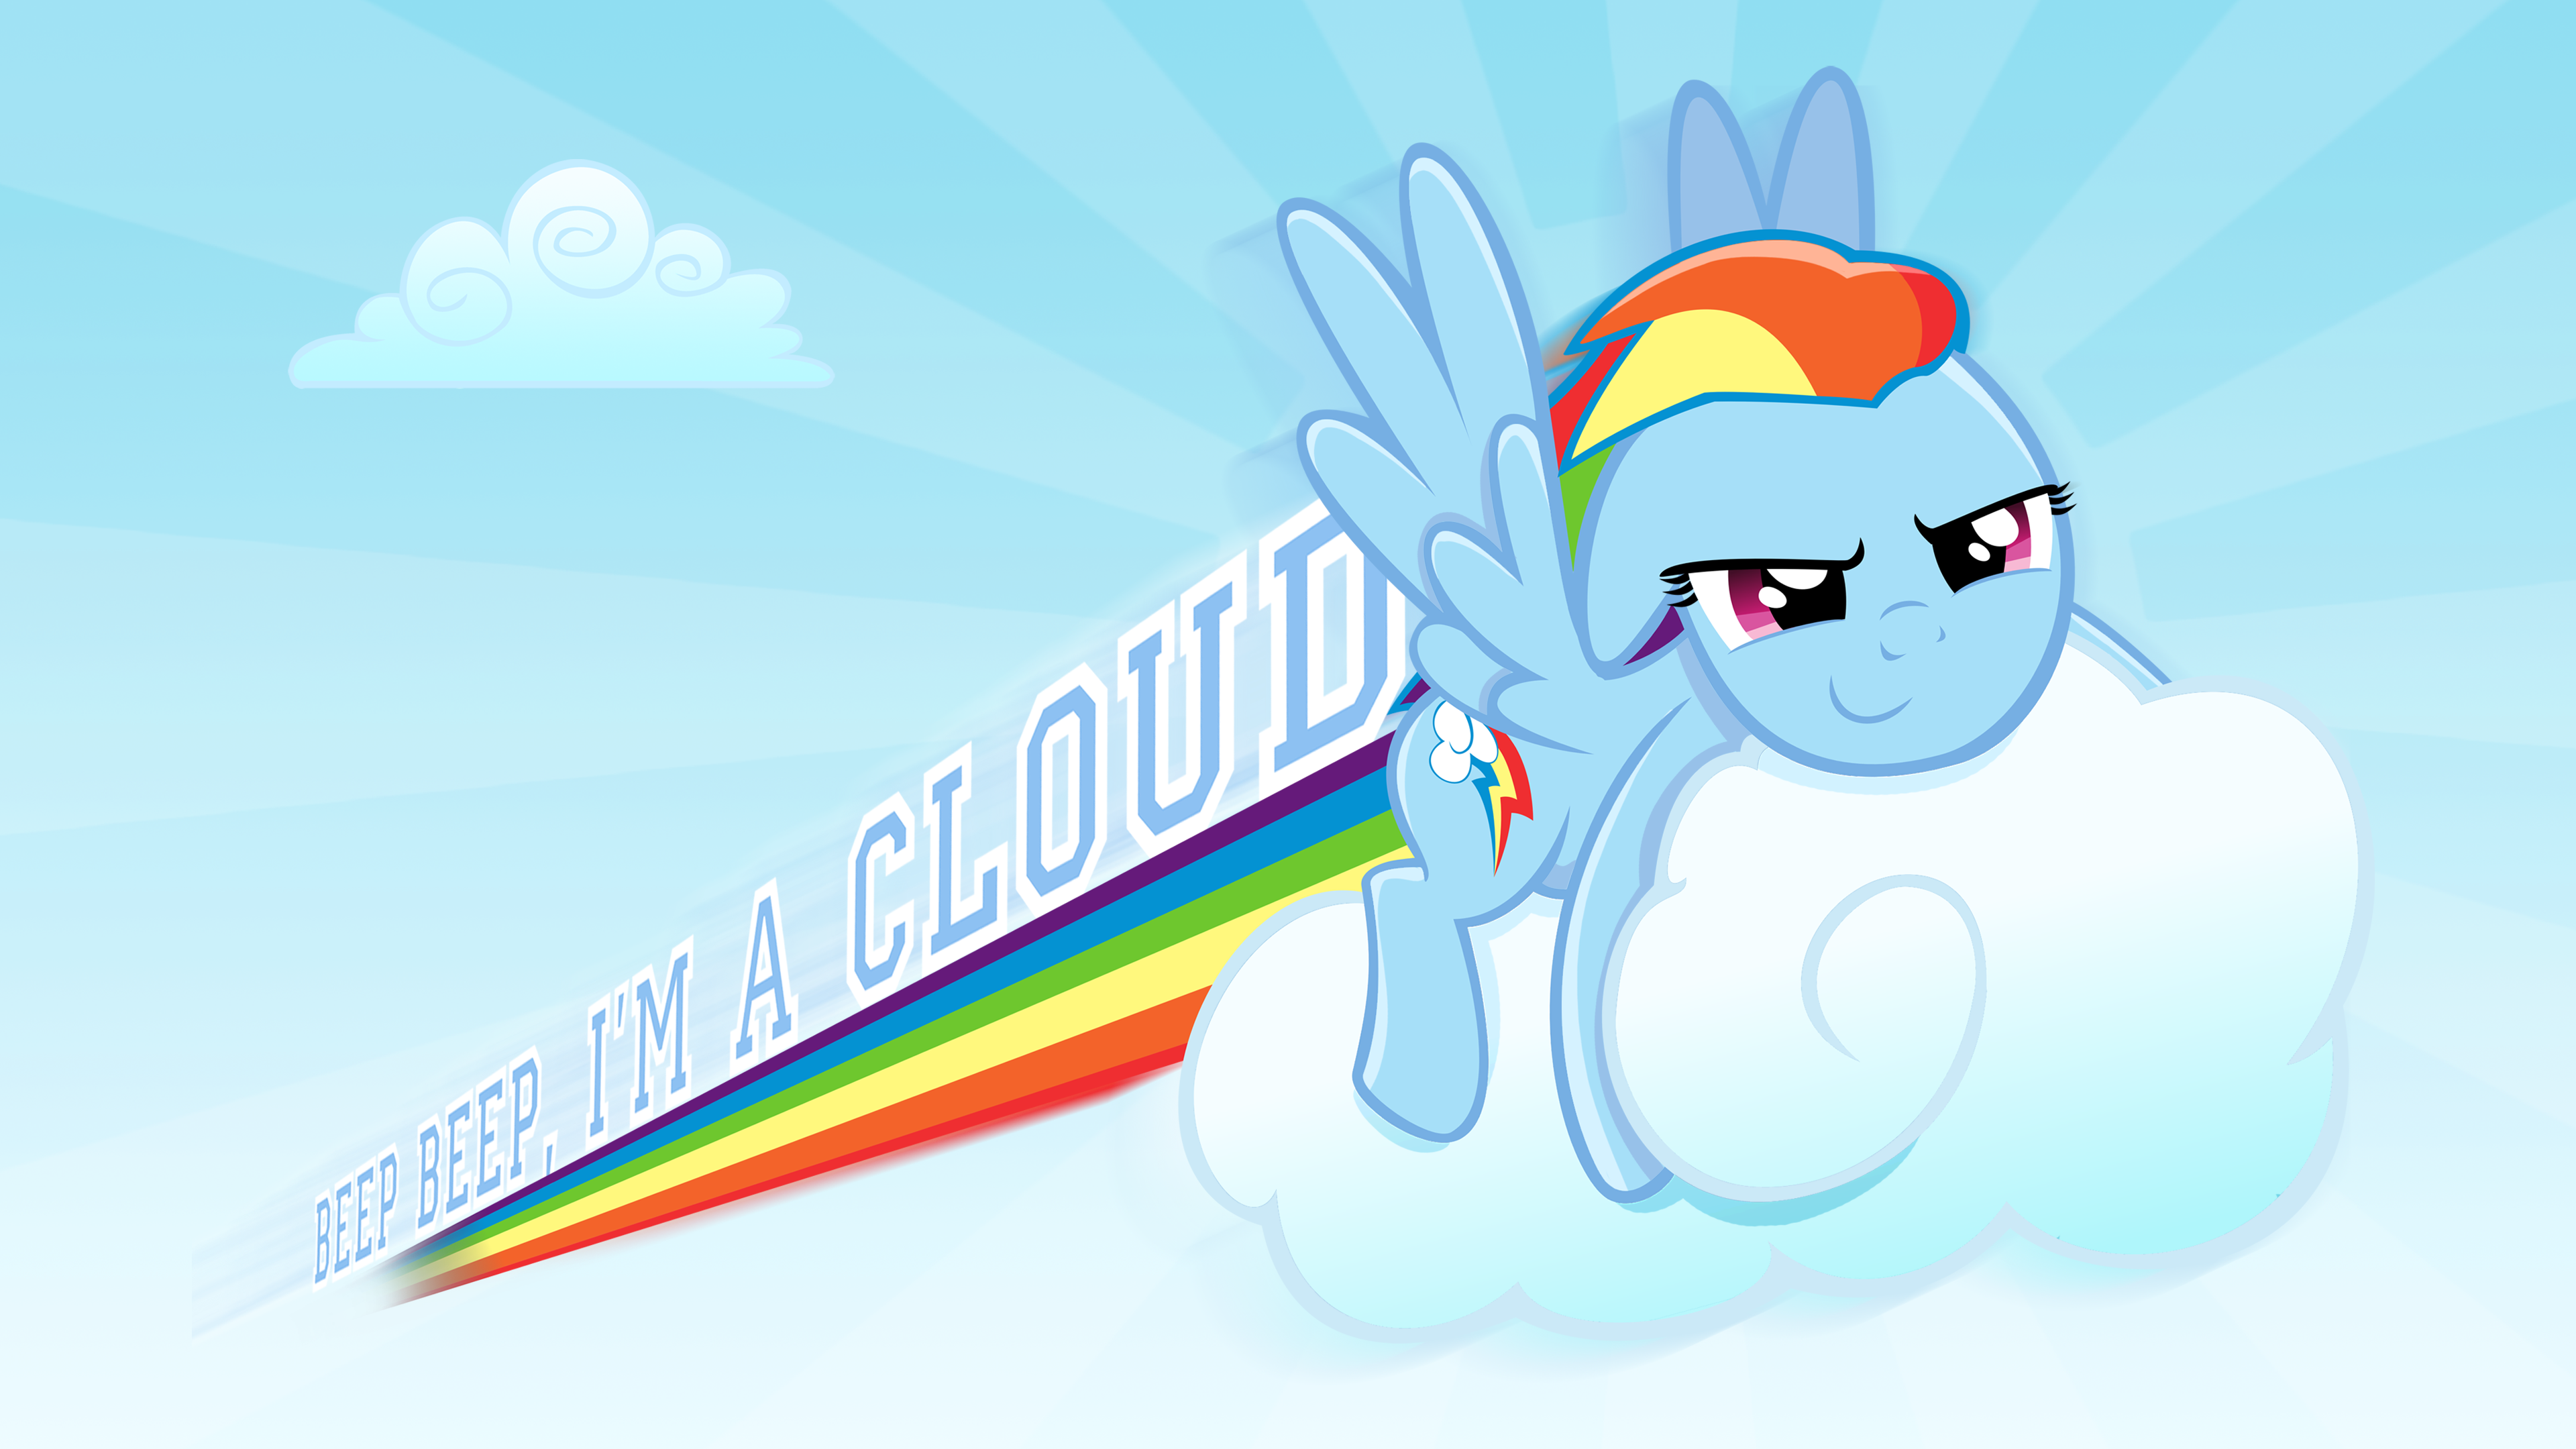 I'm a cloud Wallpaper Wider screen by GuruGrendo, Kopachris and steffy-beff